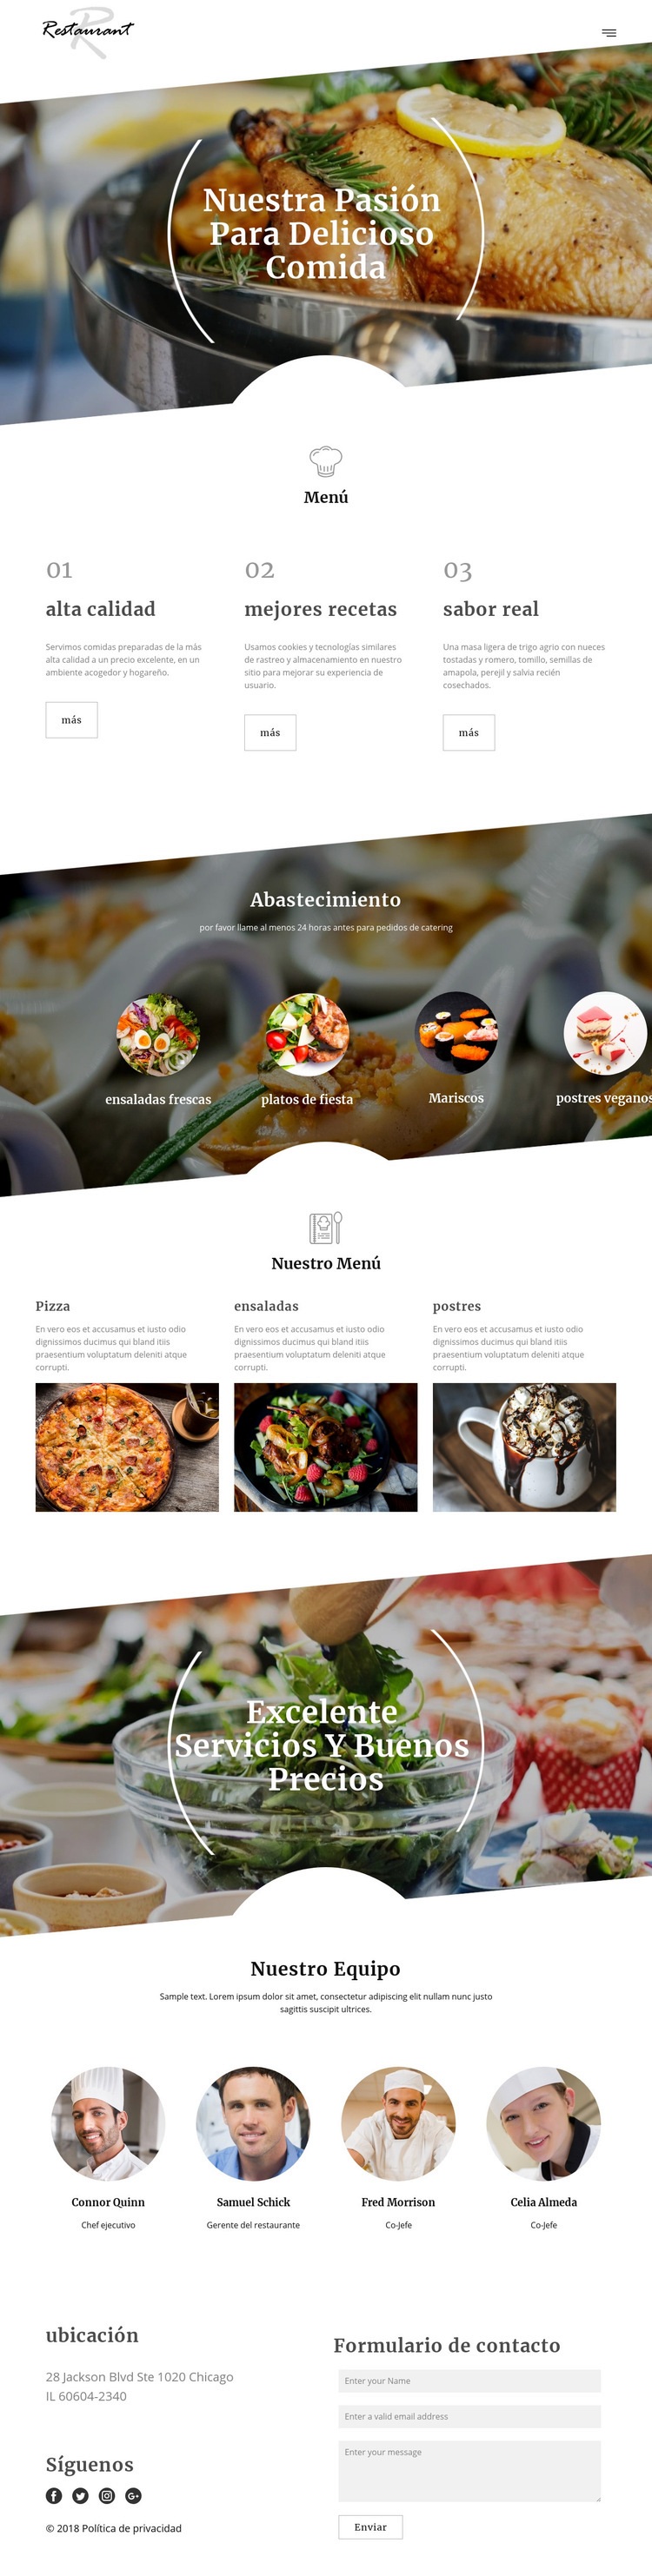 Recetas del chef ejecutivo Plantillas de creación de sitios web